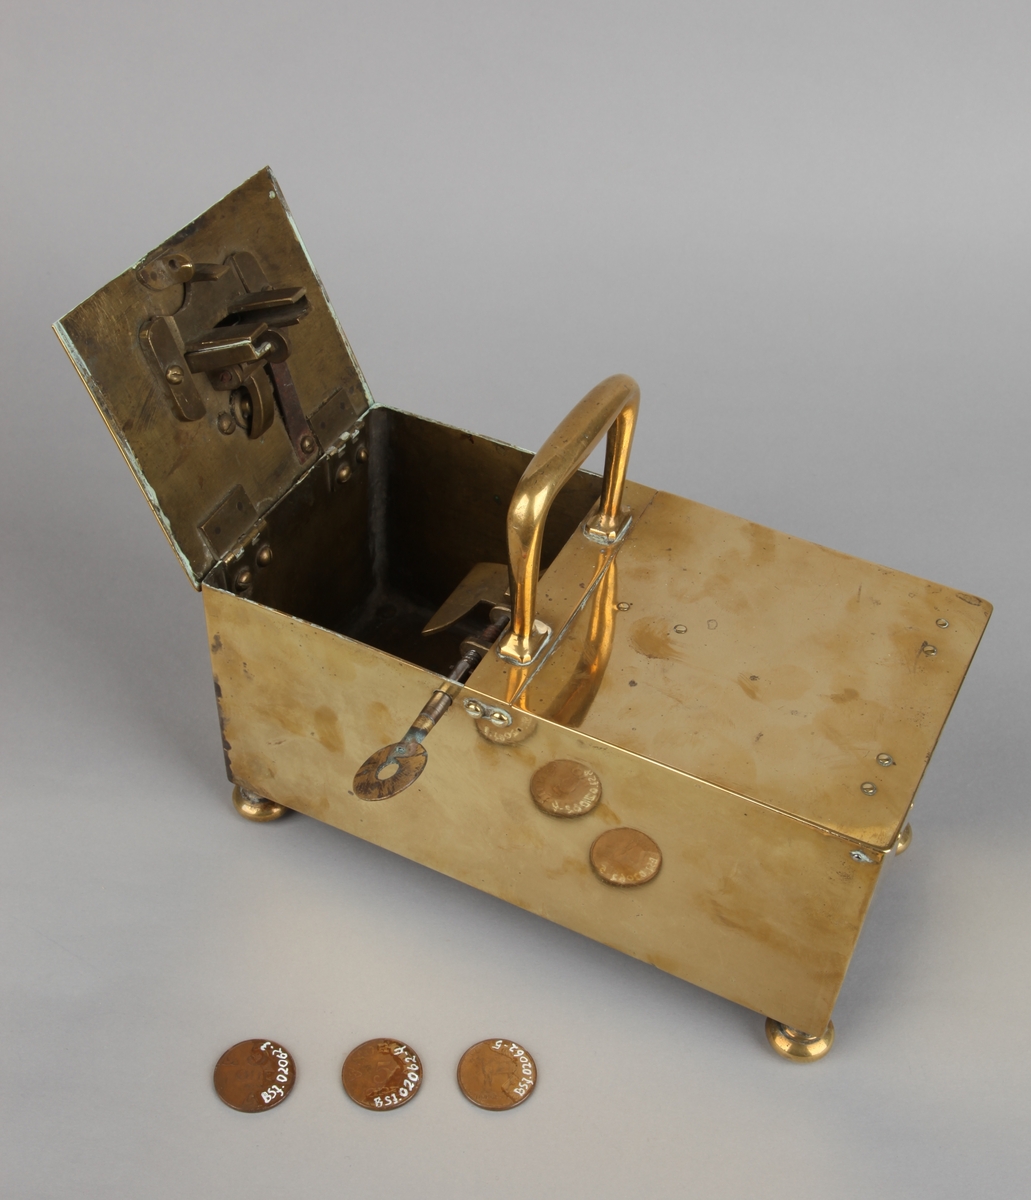 Rektangulært messingskrin med håndtak og nøkkel, samt 3 stykker kobber mynt 5 øre.